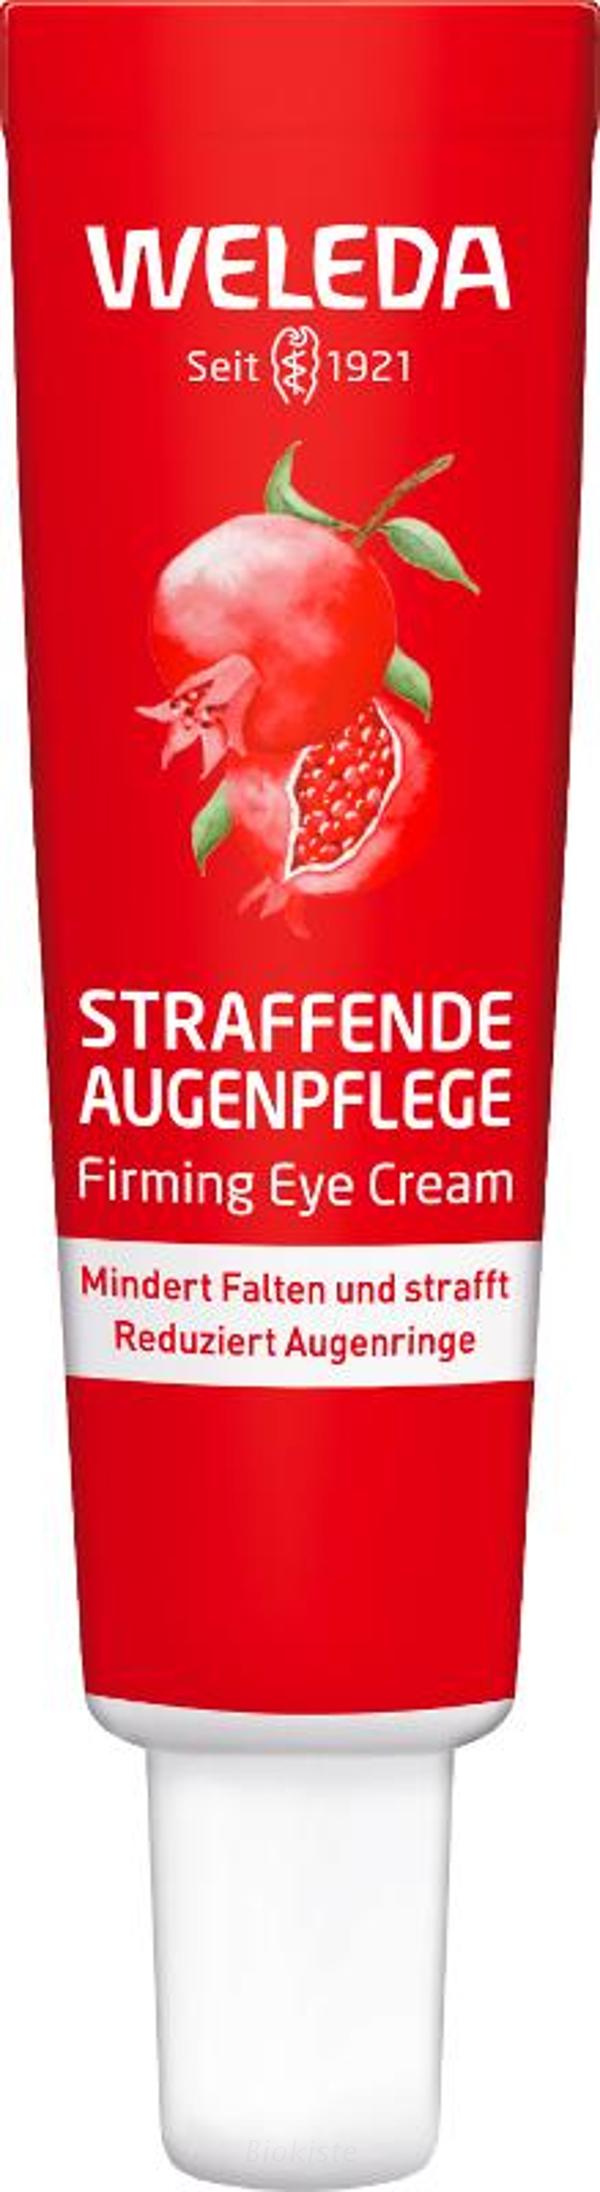 Produktfoto zu Granatapfel  Augenpflege